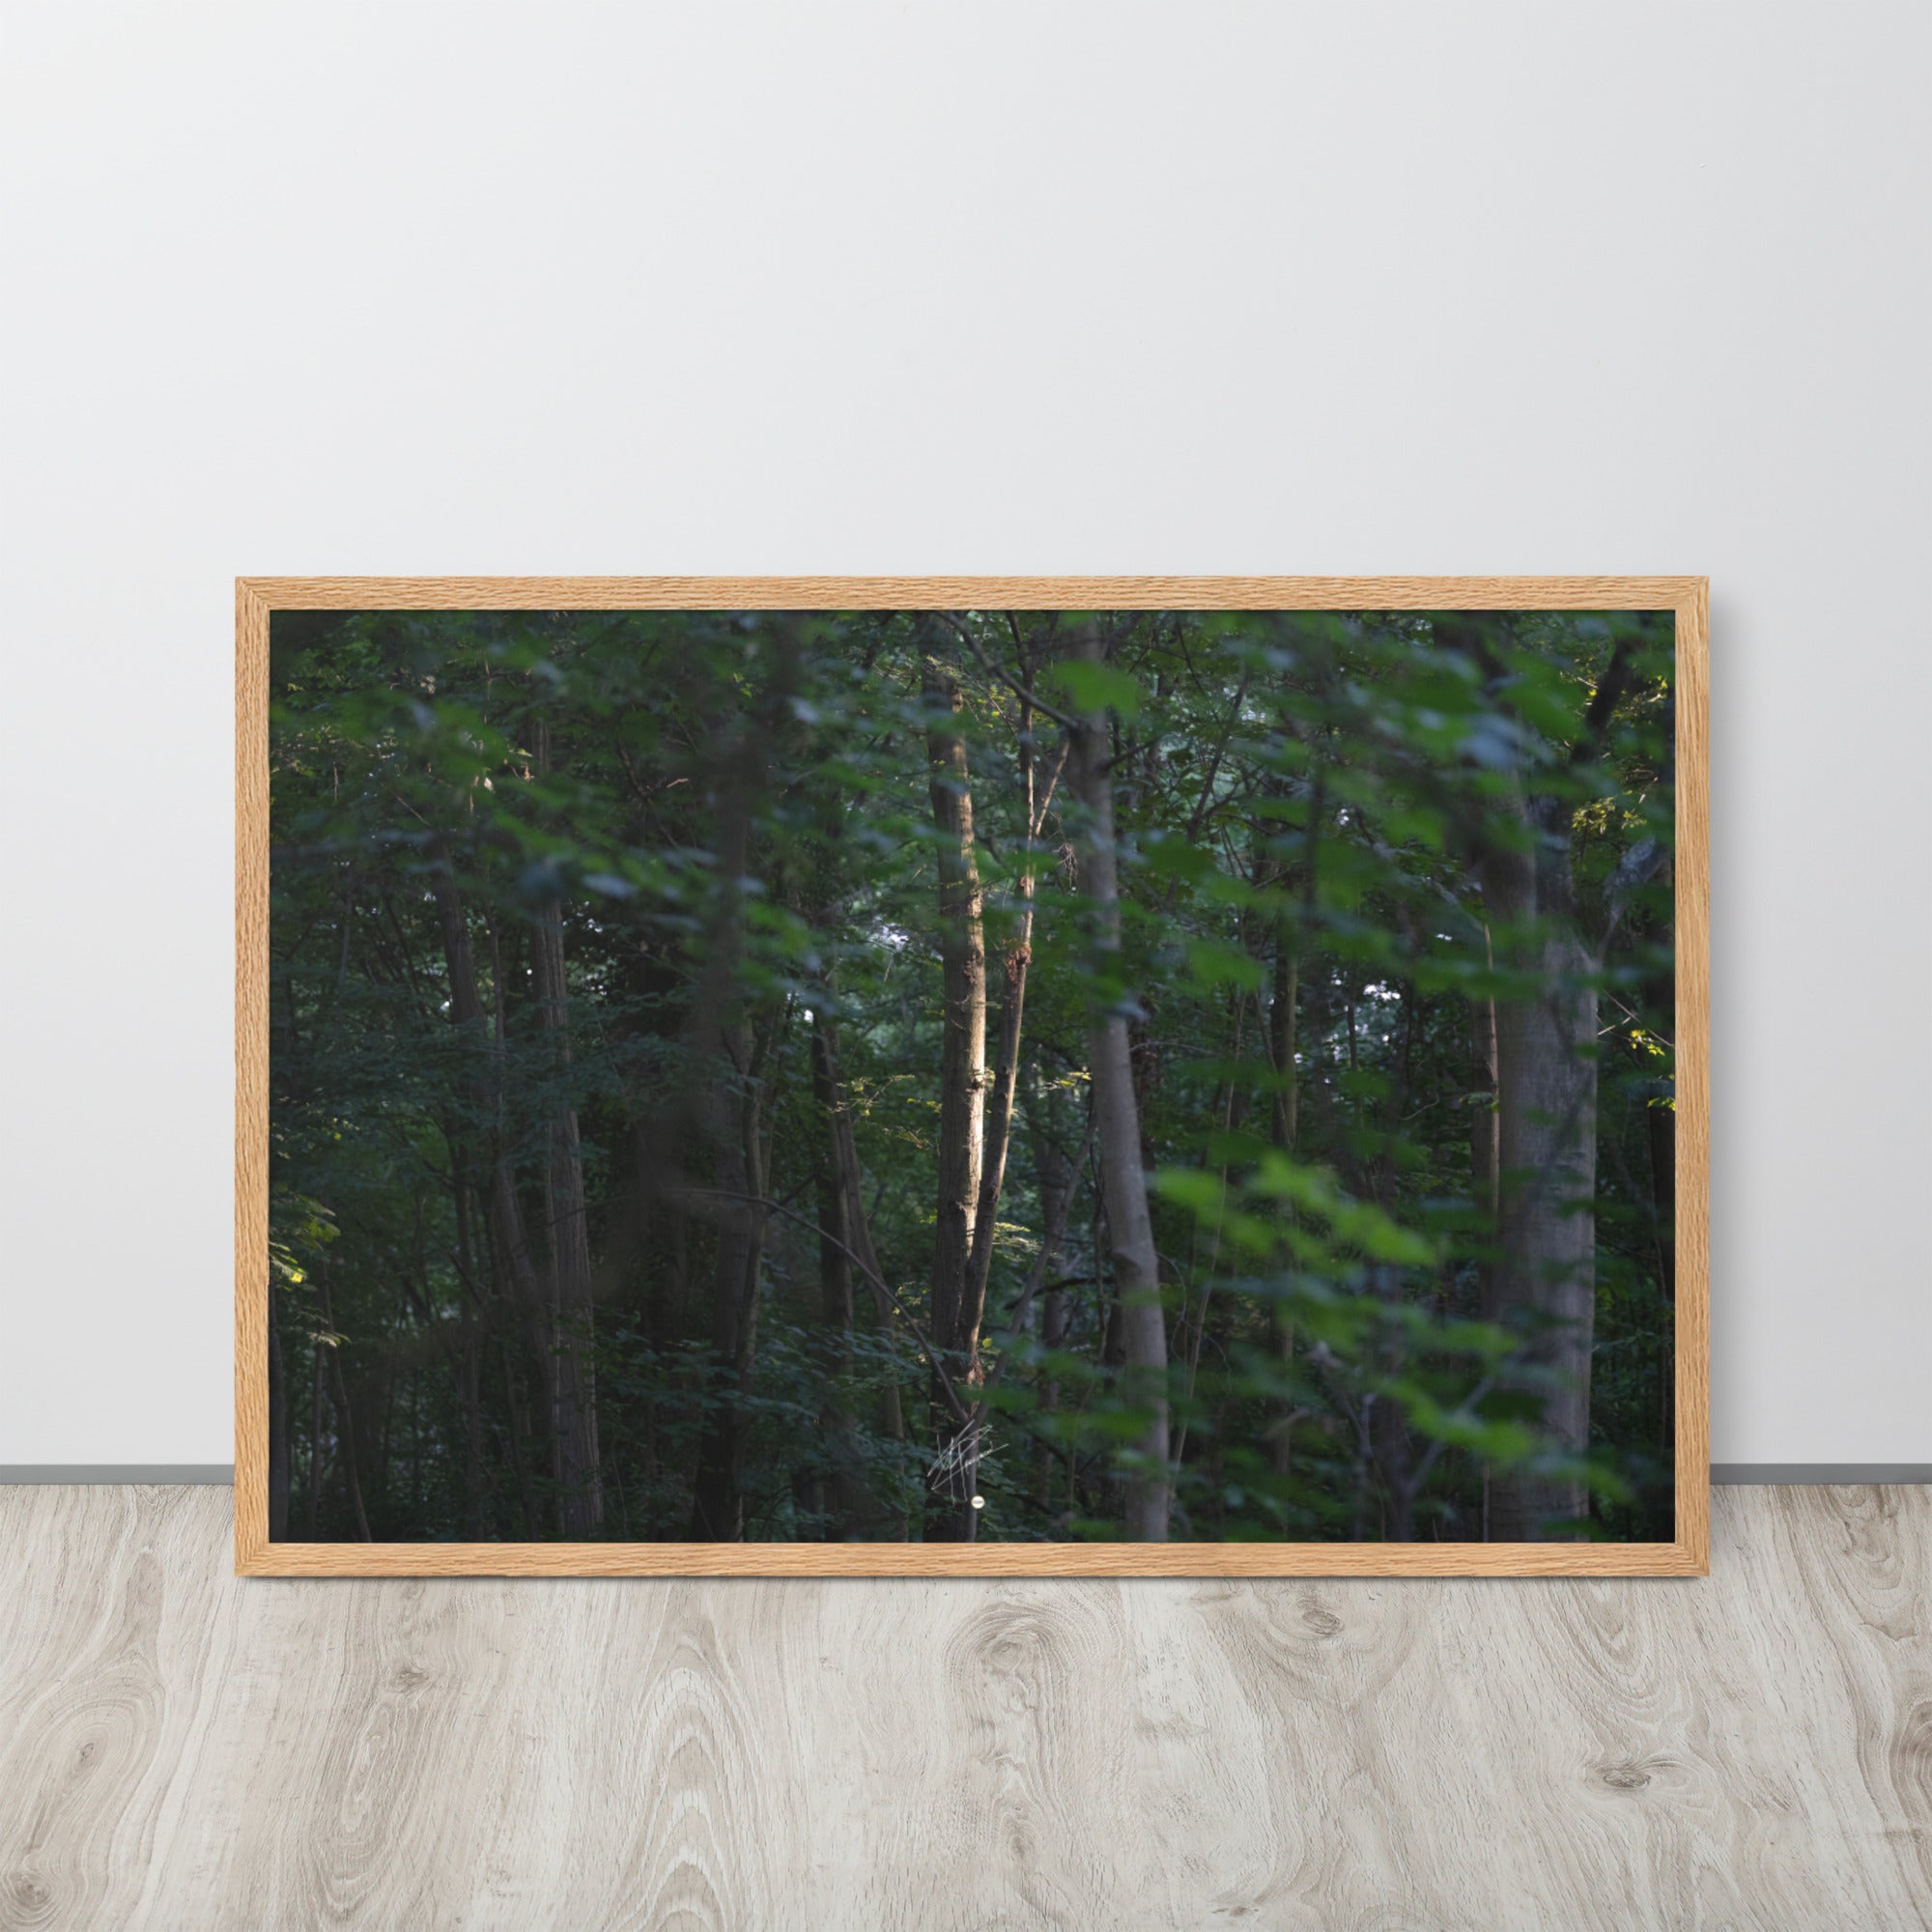 Photographie forestière mettant en évidence un arbre majestueux baigné de lumière, entouré d'une forêt ombragée, illustrant le contraste entre lumière et ombre.